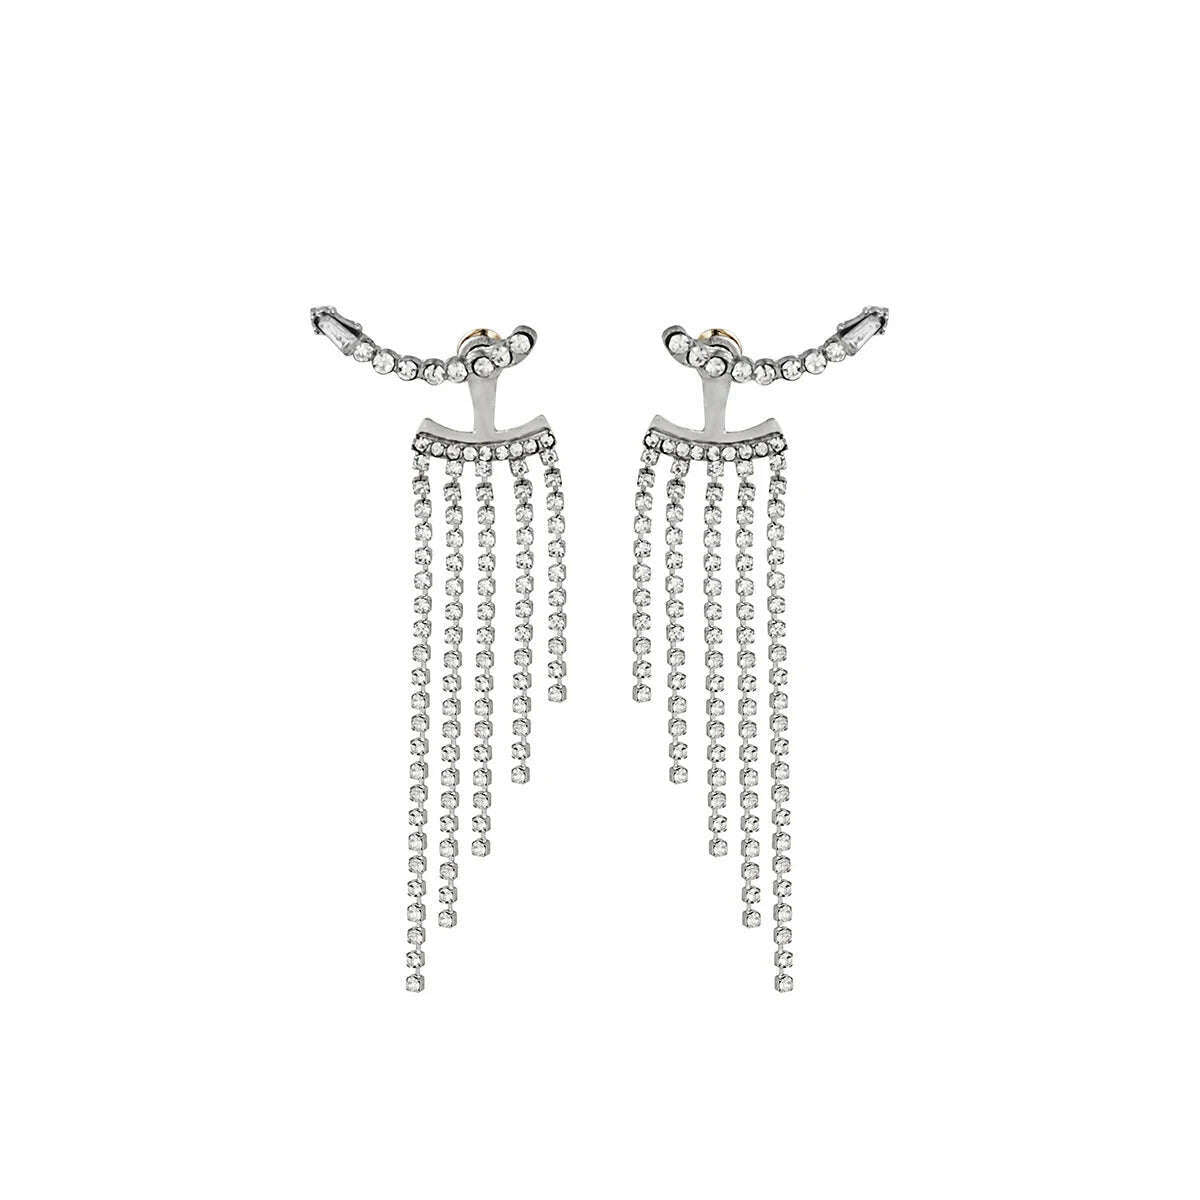 KIMLUD, Korean Full Rhinestone Long Tassel Drop Earrings for Women Exquisite Luxury Zircon Crystal Earrings female Jewelry Wholesale, KIMLUD Women's Clothes